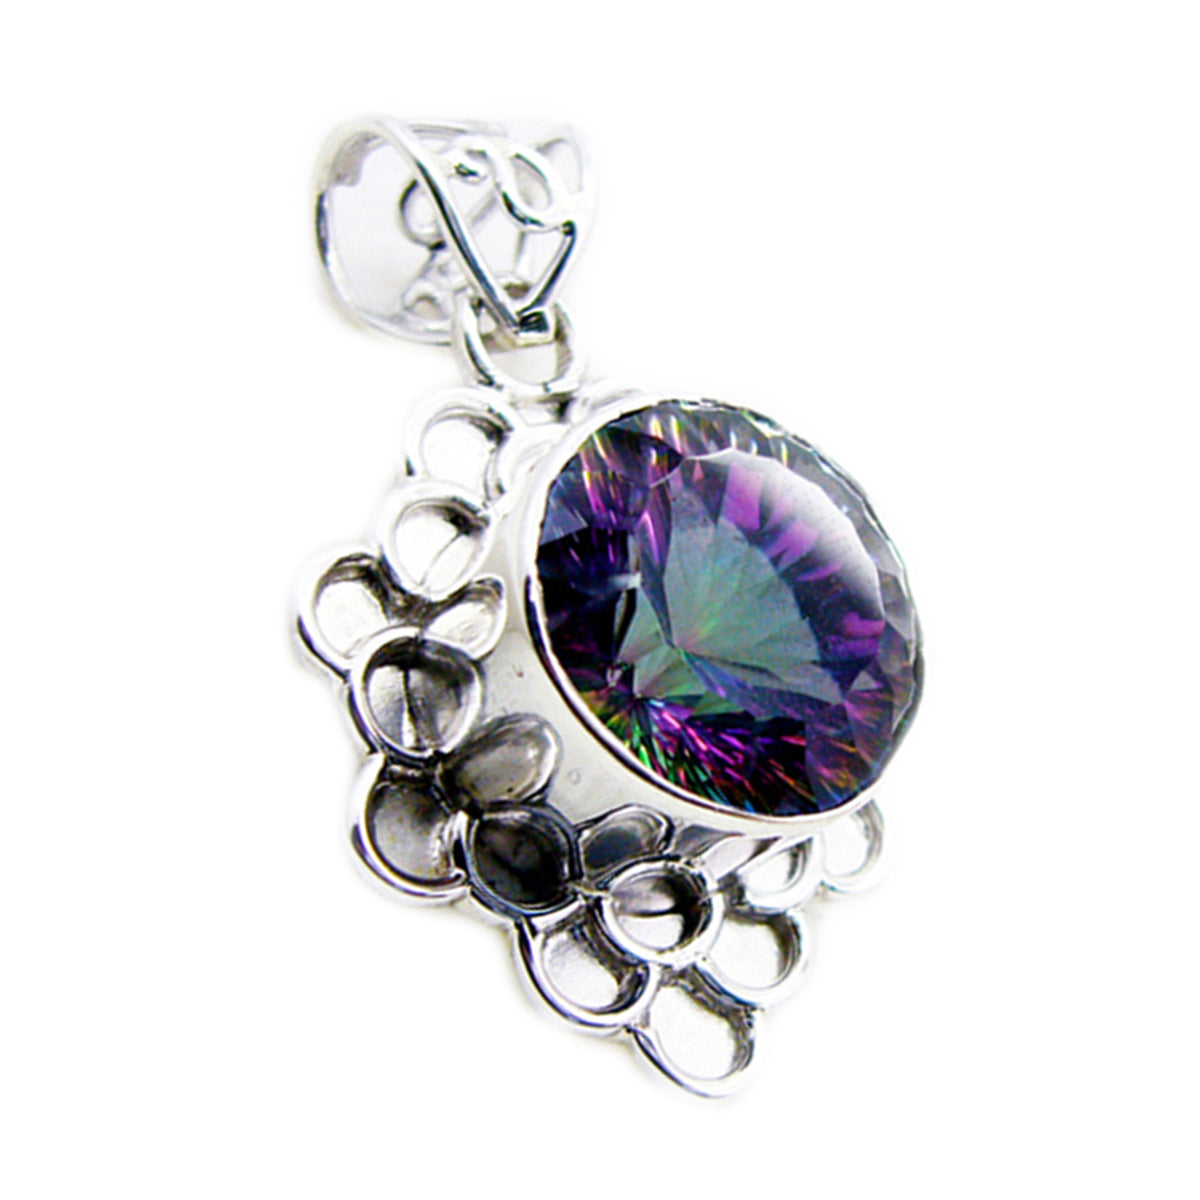 Riyo fanciable gems redondo facetado multicolor cuarzo místico colgante de plata regalo para compromiso